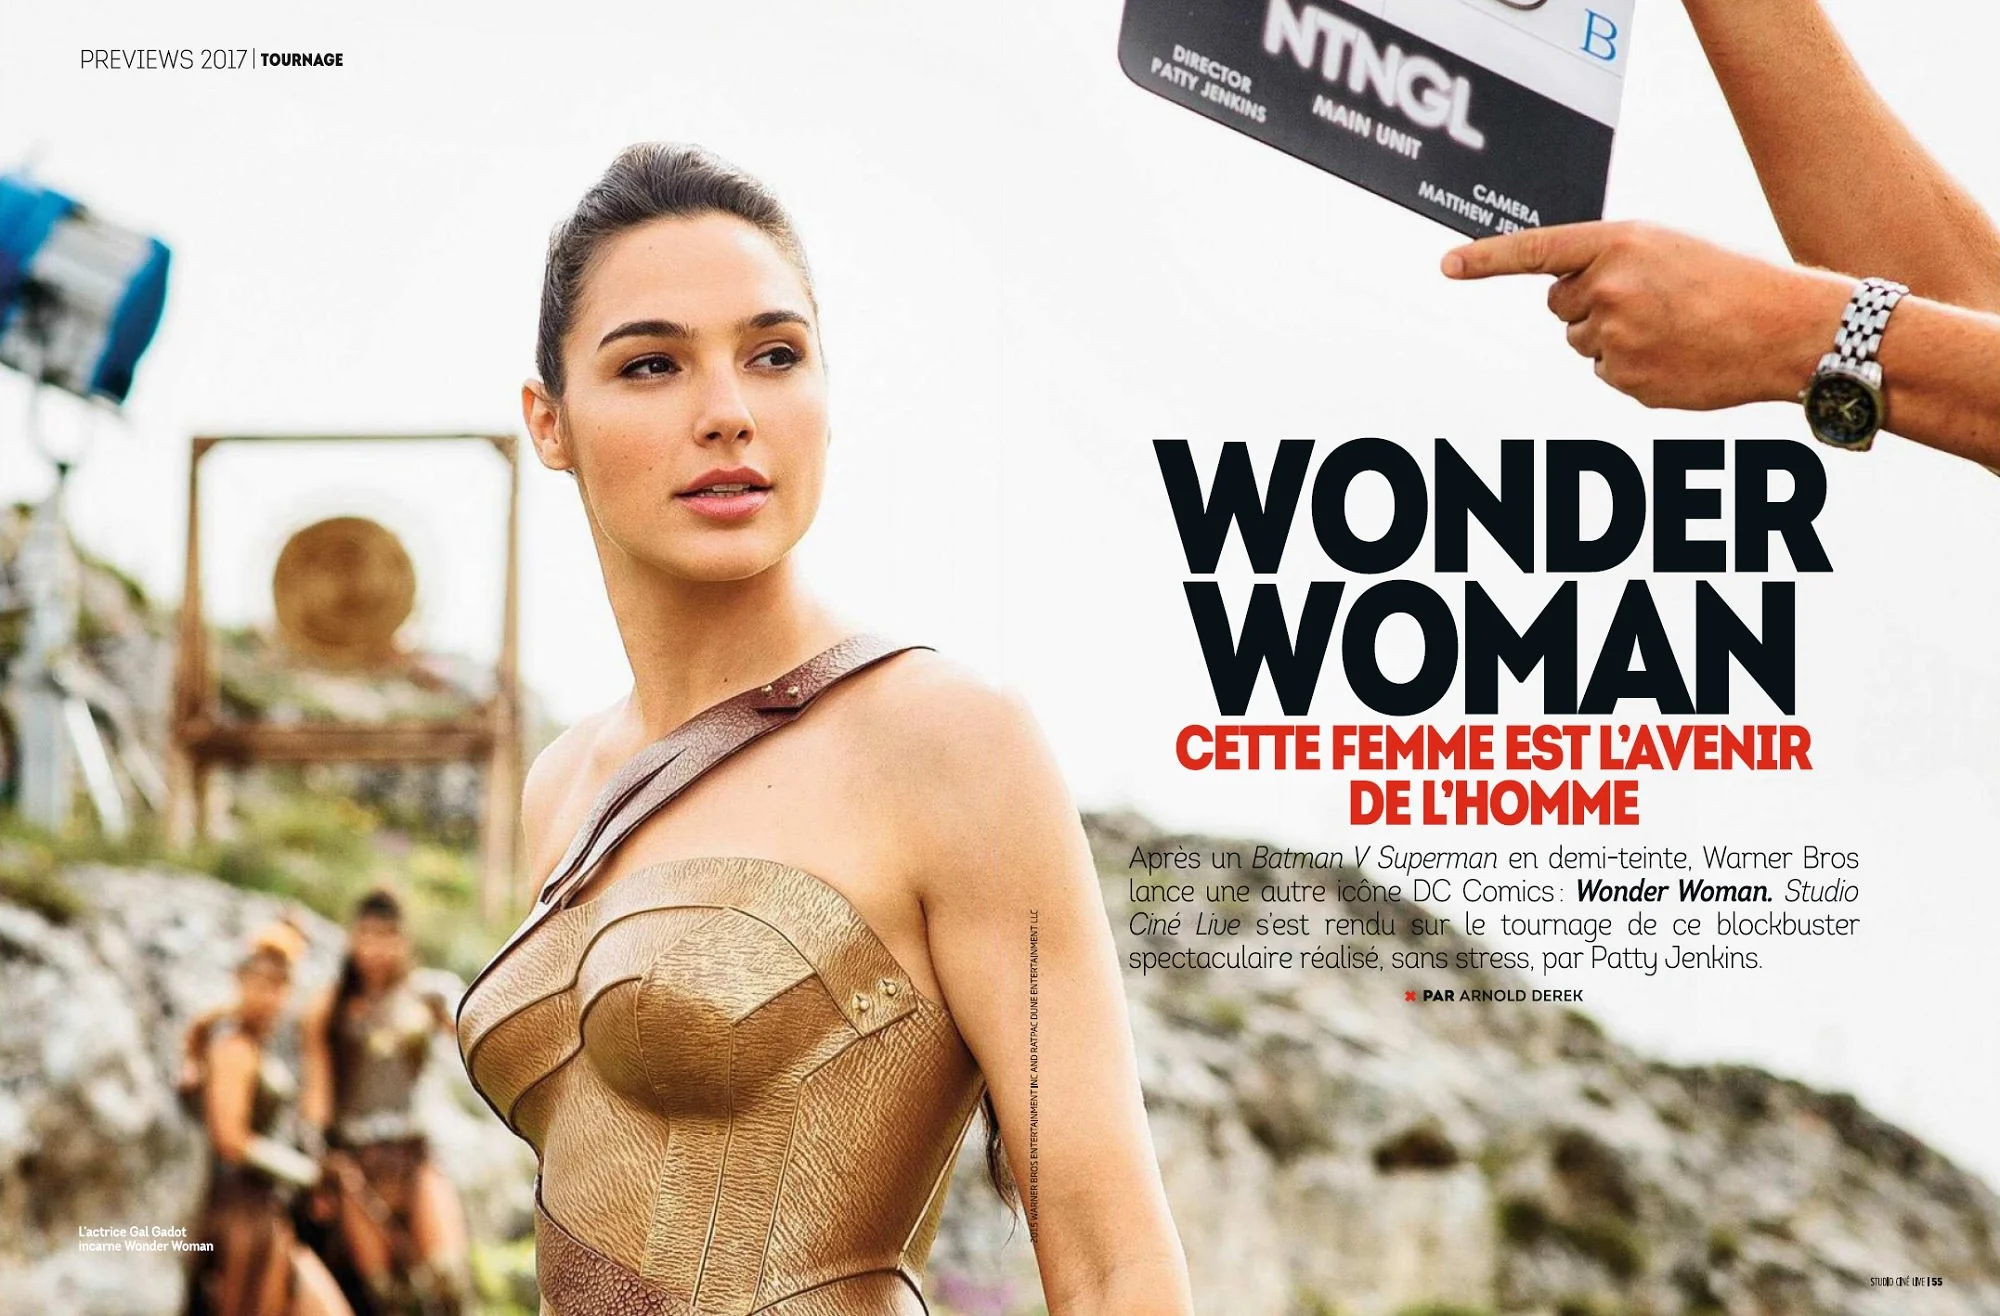 Új képet kaptunk Wonder Woman-ről, miközben megerősítették a főgonoszt is